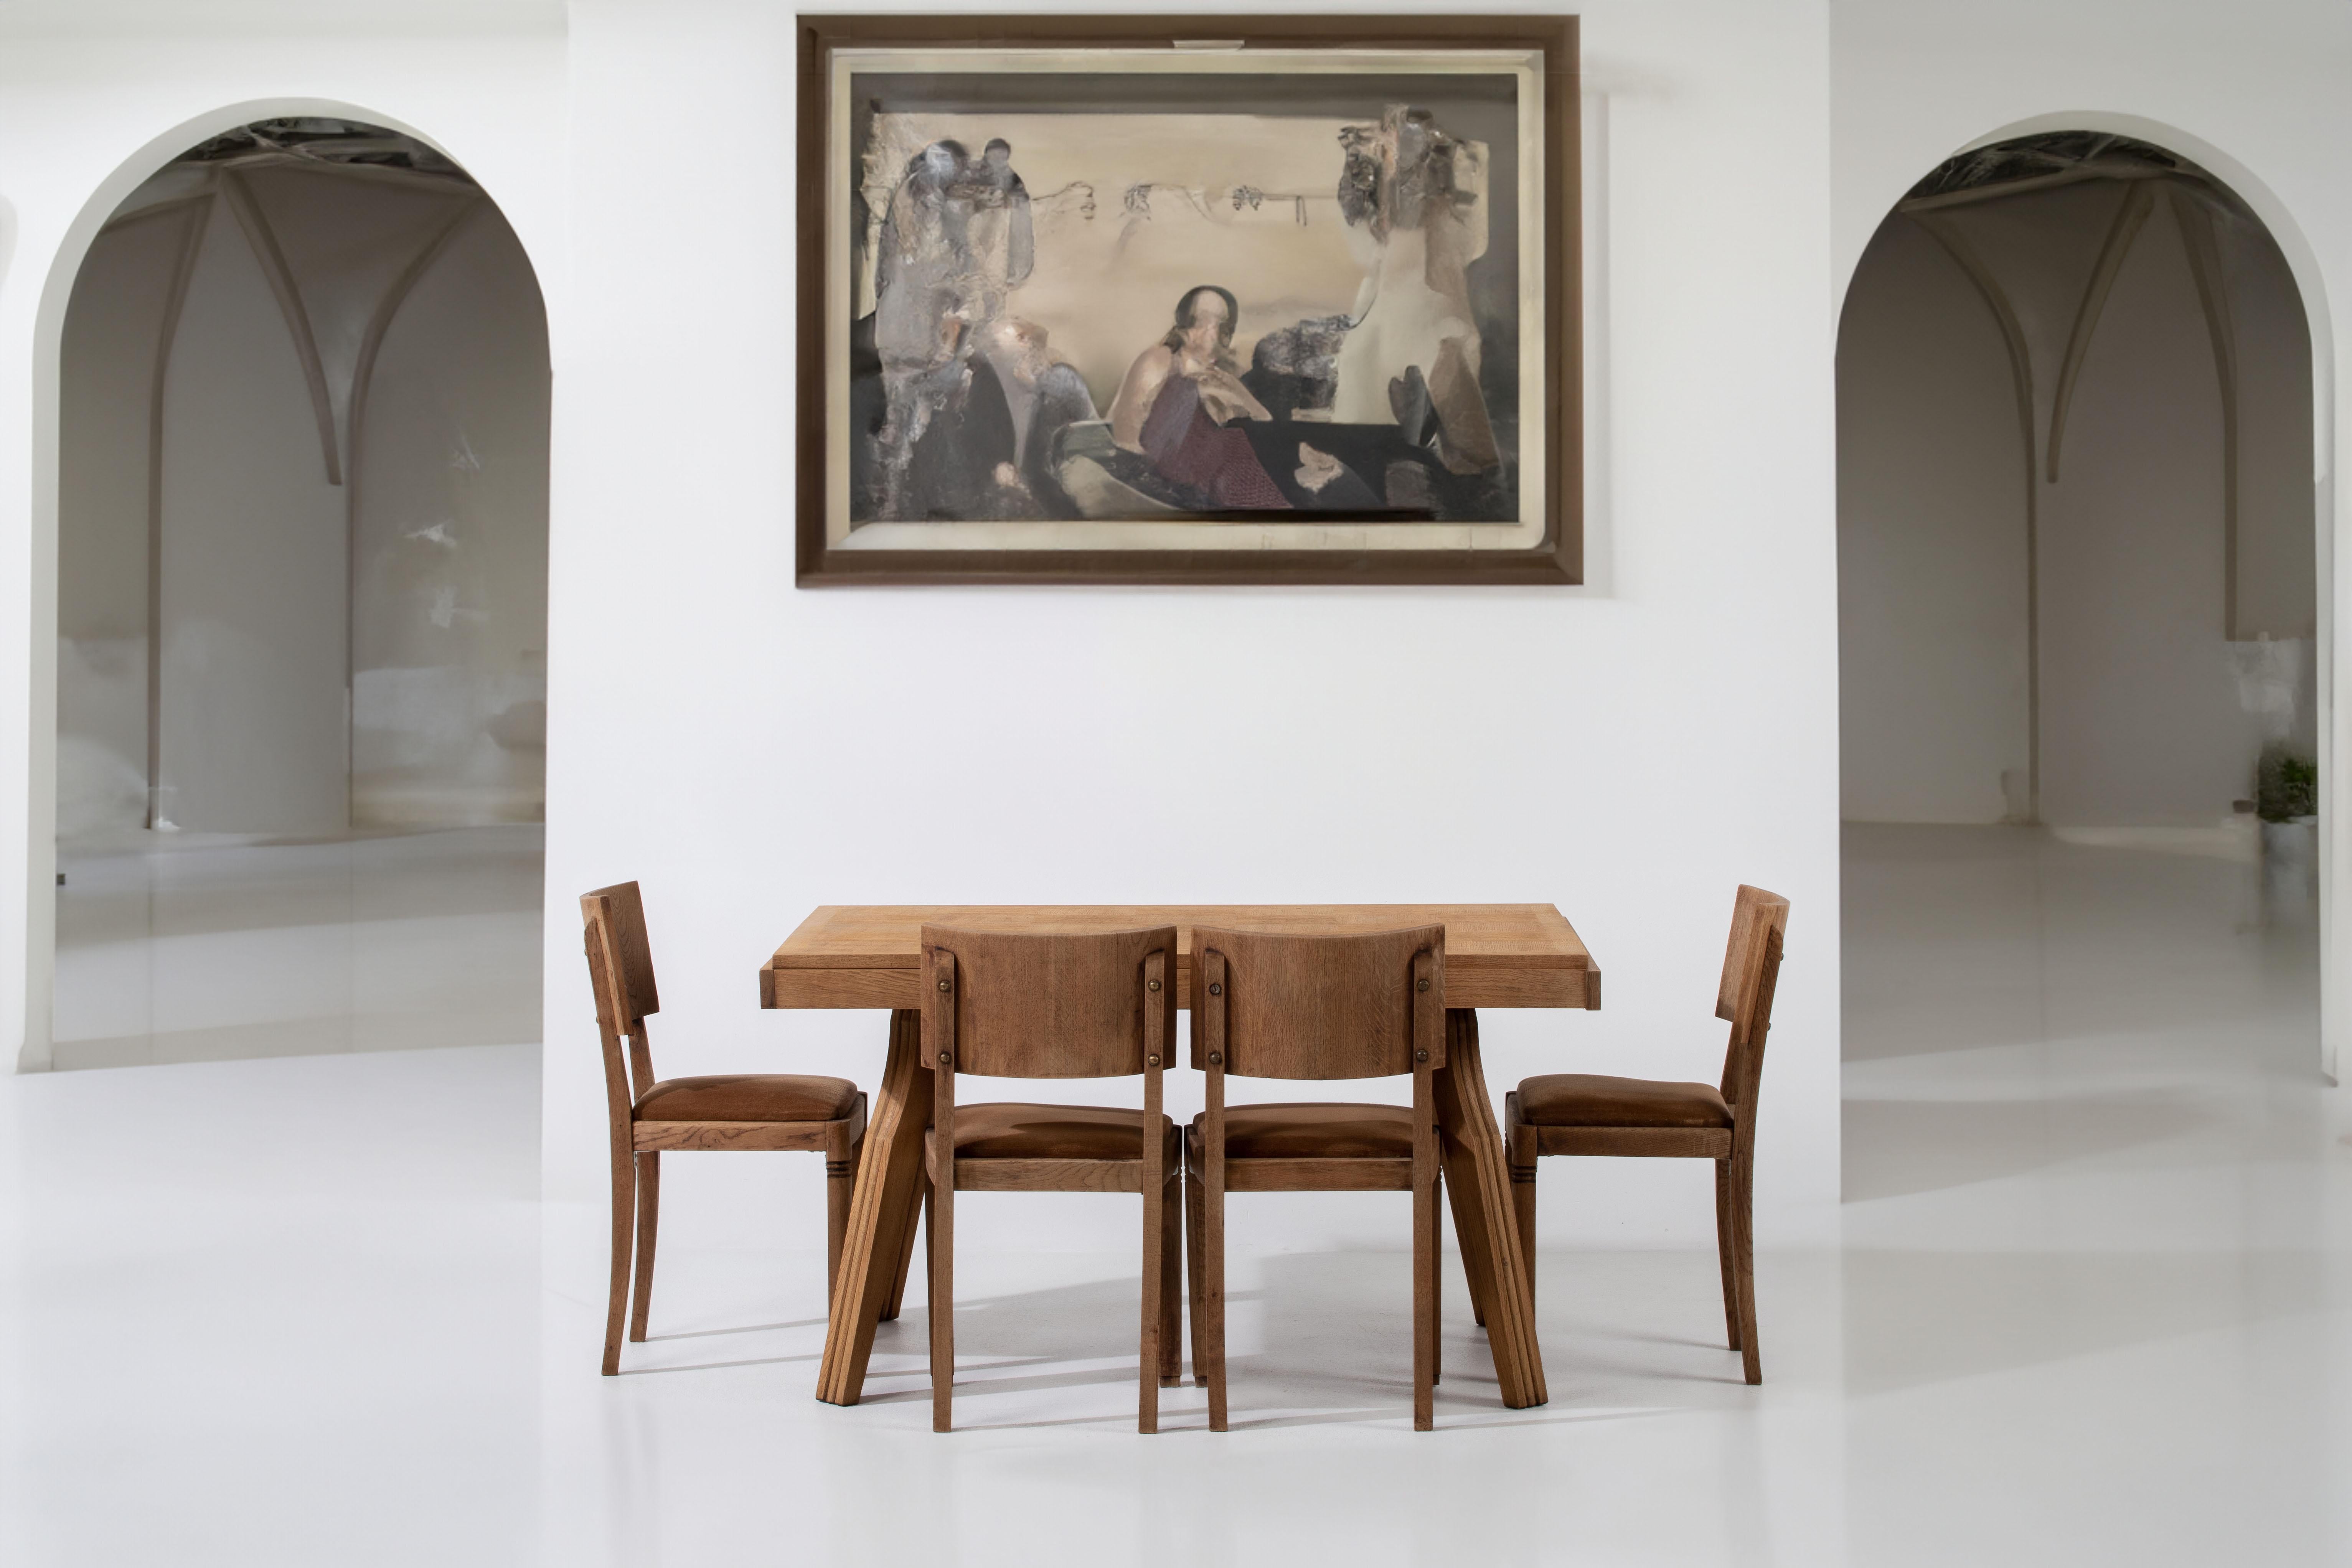 Wir präsentieren einen bezaubernden und kompakten französischen Art Deco Esstisch, der zeitlose Eleganz ausstrahlt. Dieser exquisite Tisch zeigt die Schönheit des Eichenholzes mit einer geschliffenen Oberfläche, die eine atemberaubende Holzmaserung